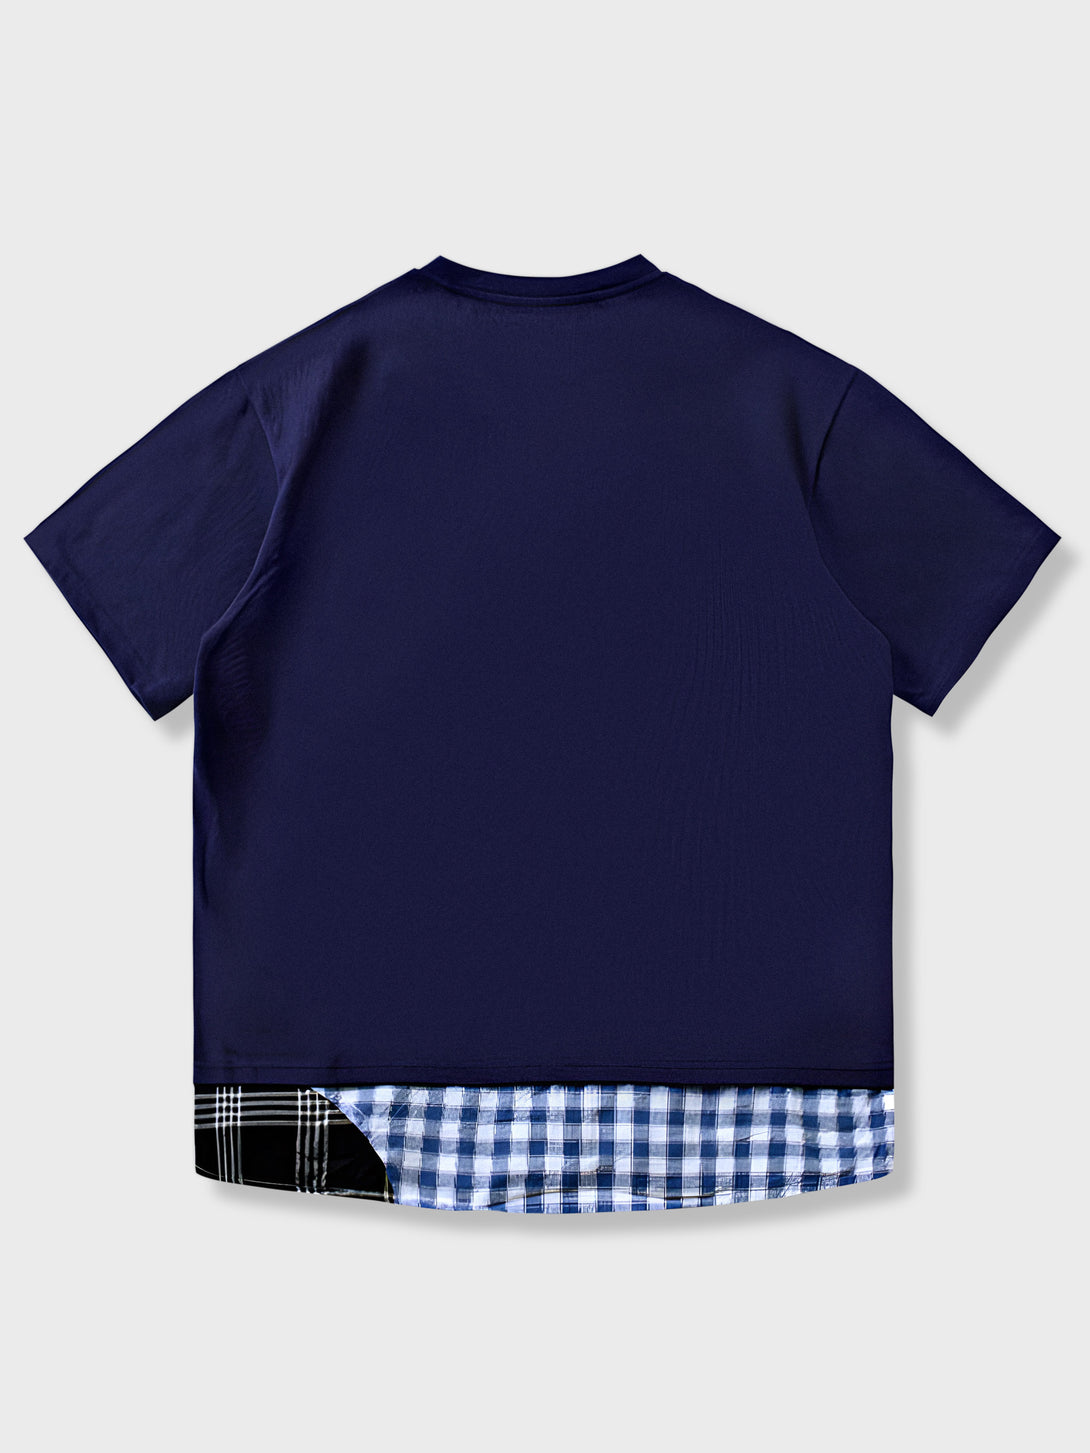 プレーンなTシャツに裾の二種類のチェック柄パッチと同じデザインの胸ポケットが特徴のビンテージスタイルTシャツ